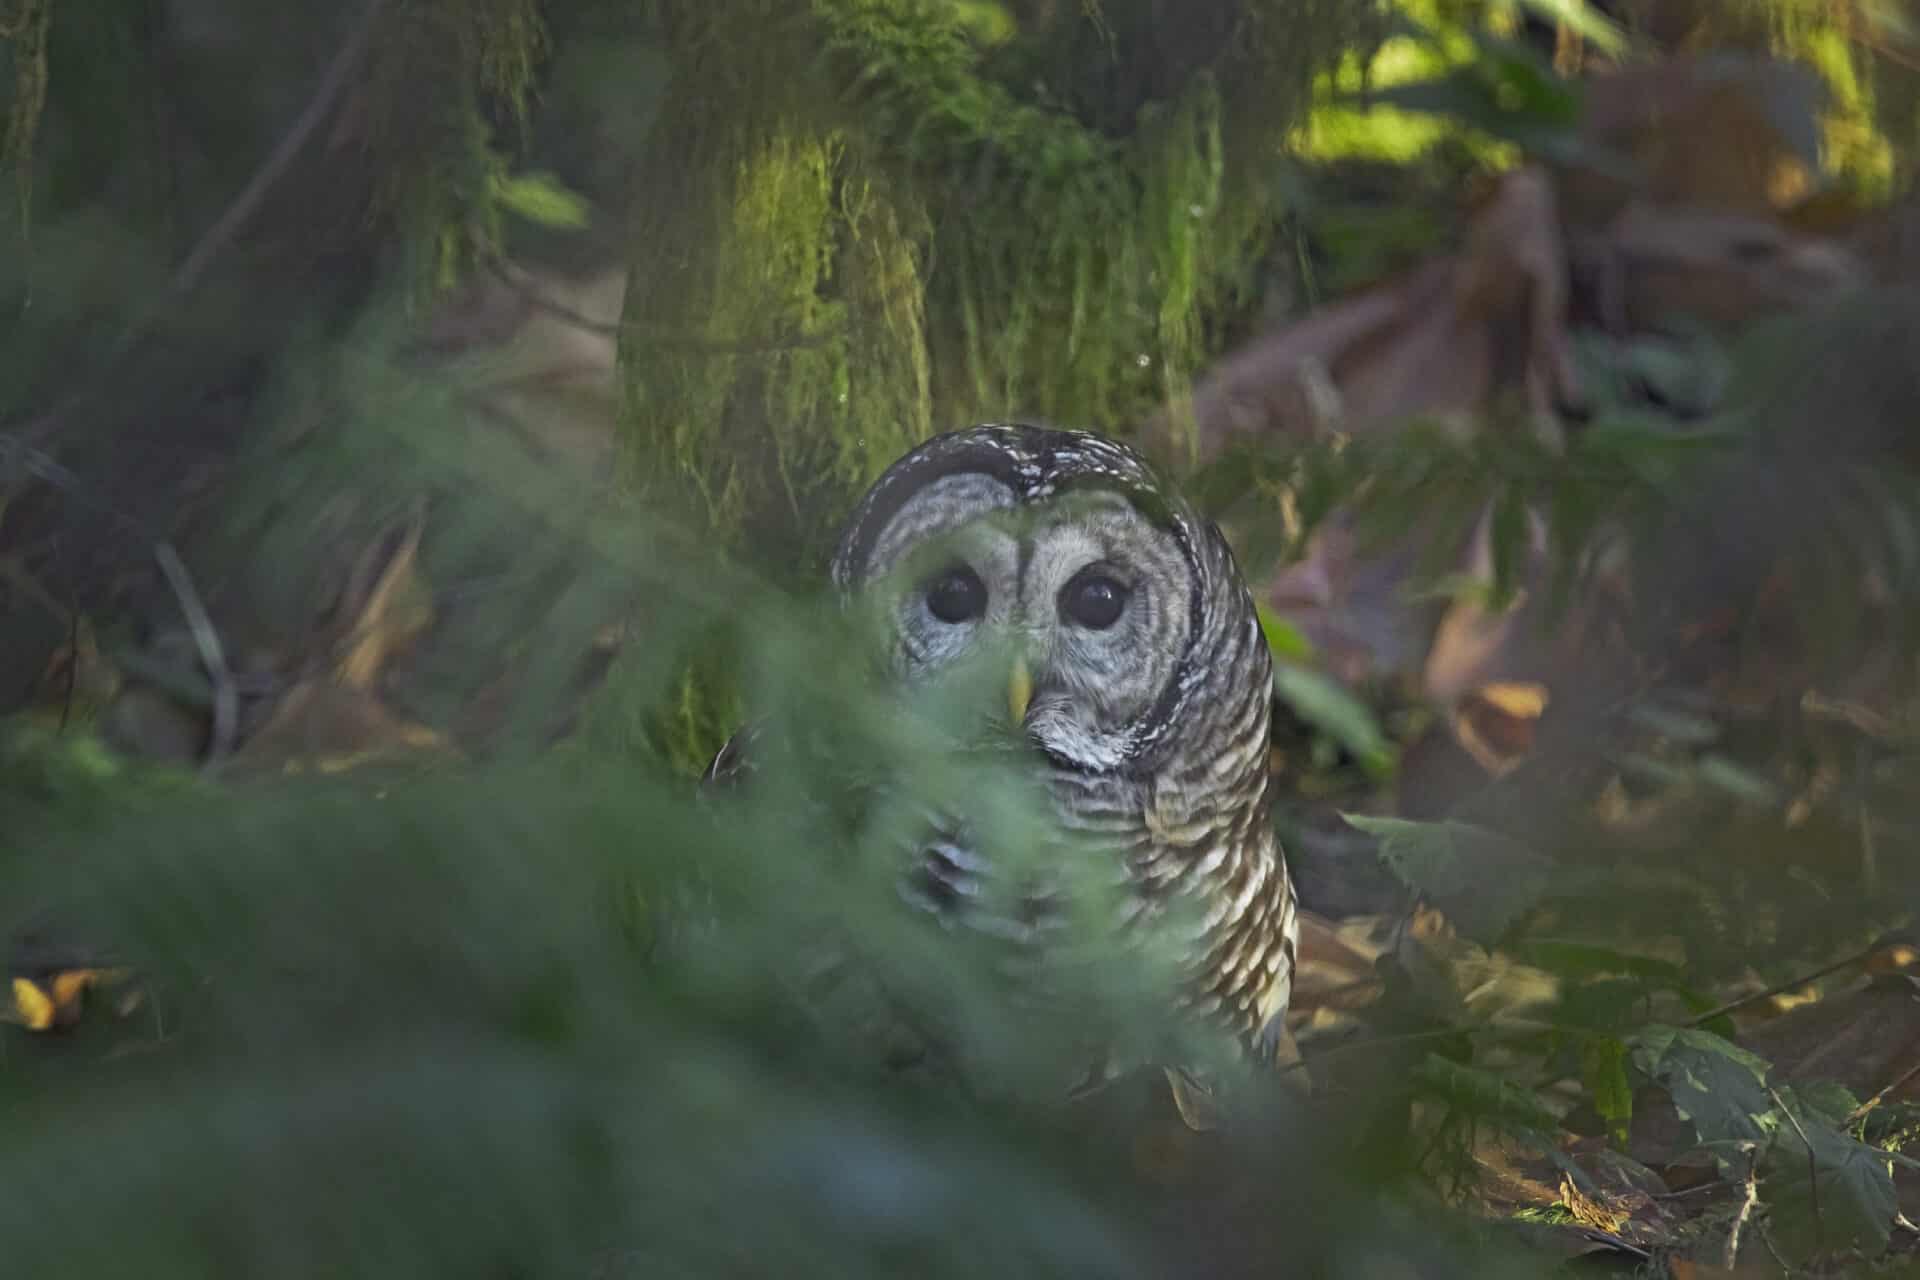 Barred Owl, December 20, 2021